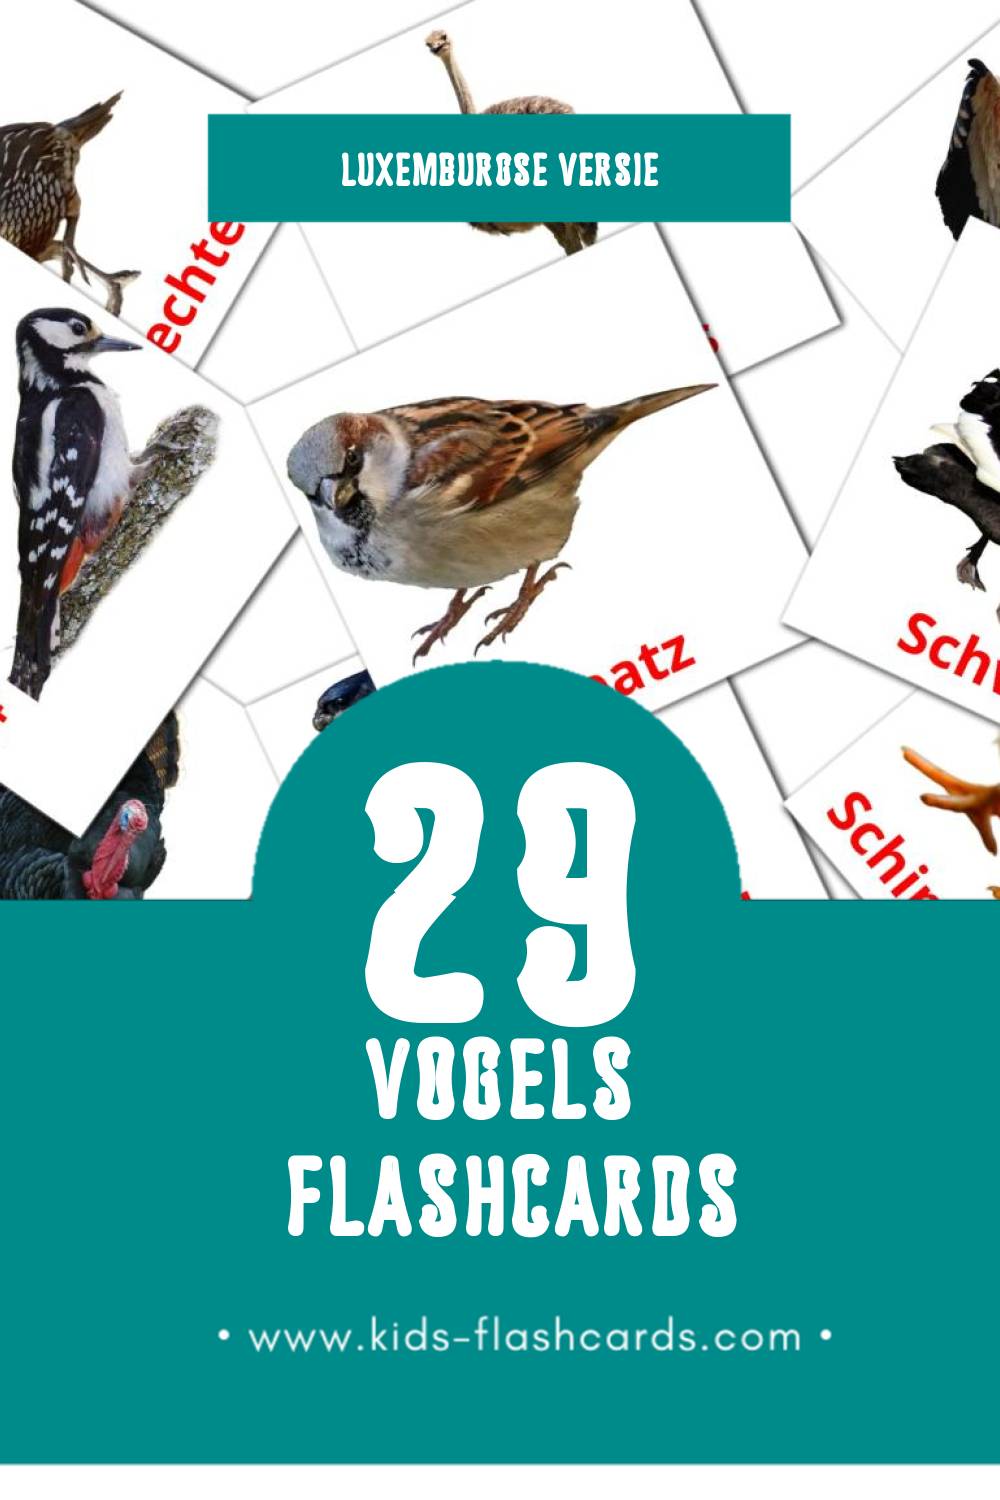 Visuele Vullen Flashcards voor Kleuters (29 kaarten in het Luxemburgs)